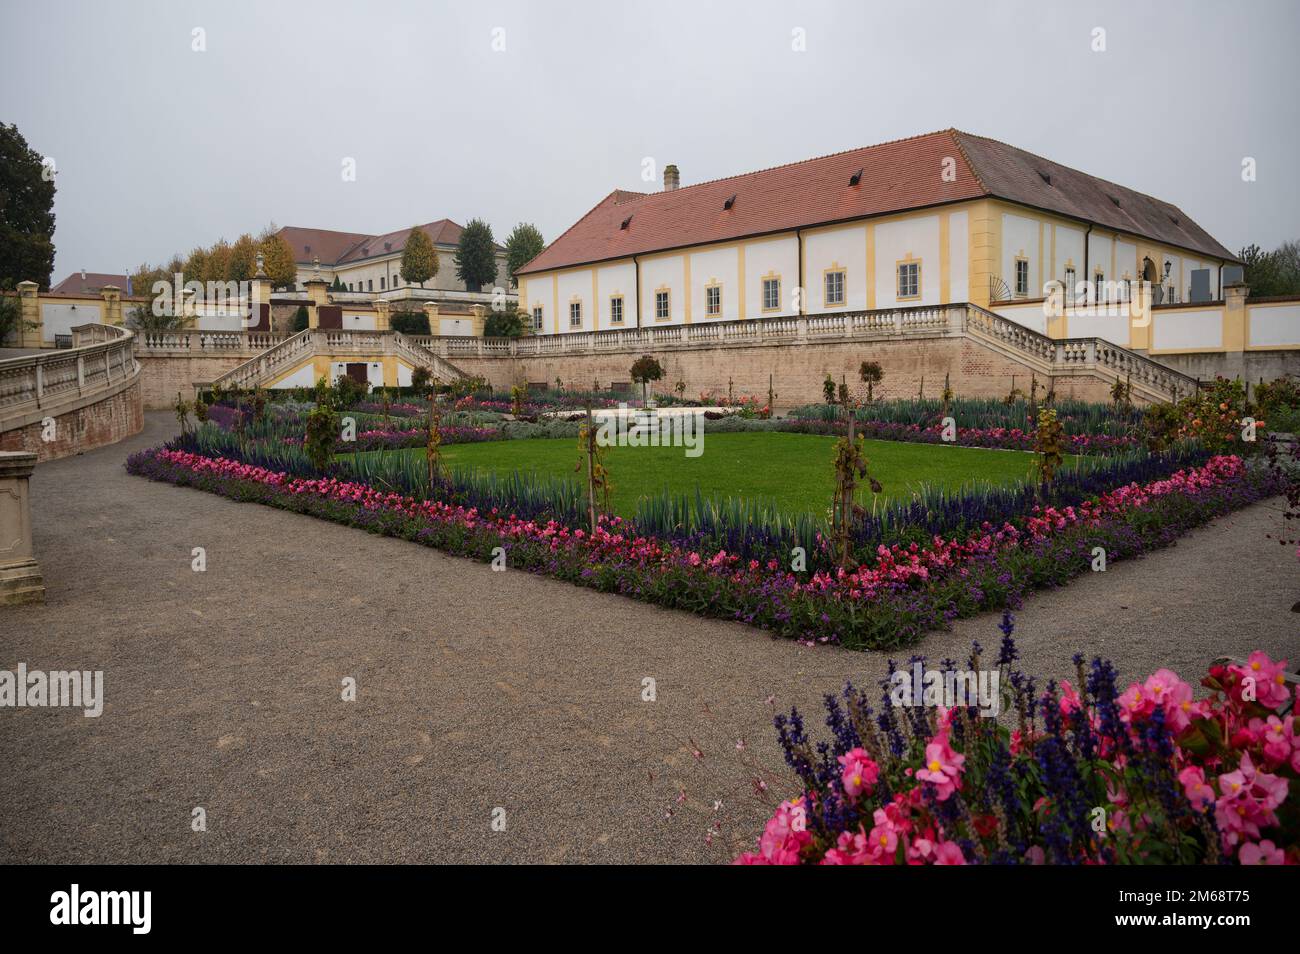 Blick auf die Gärten des Schlosses Hof in Niederösterreich eine Landresidenz aus dem 18. Jahrhundert, die größtenteils von Prinz Eugene von Savoyen gegründet wurde Stockfoto